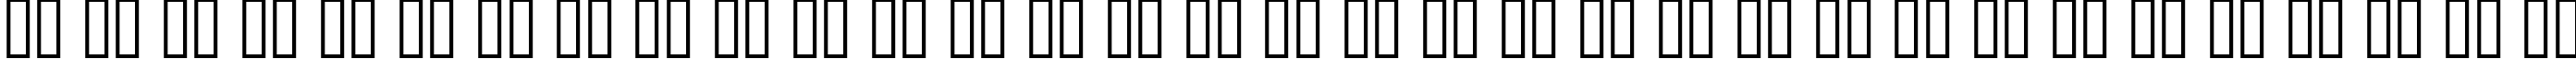 Пример написания русского алфавита шрифтом Square721 Blk Normal